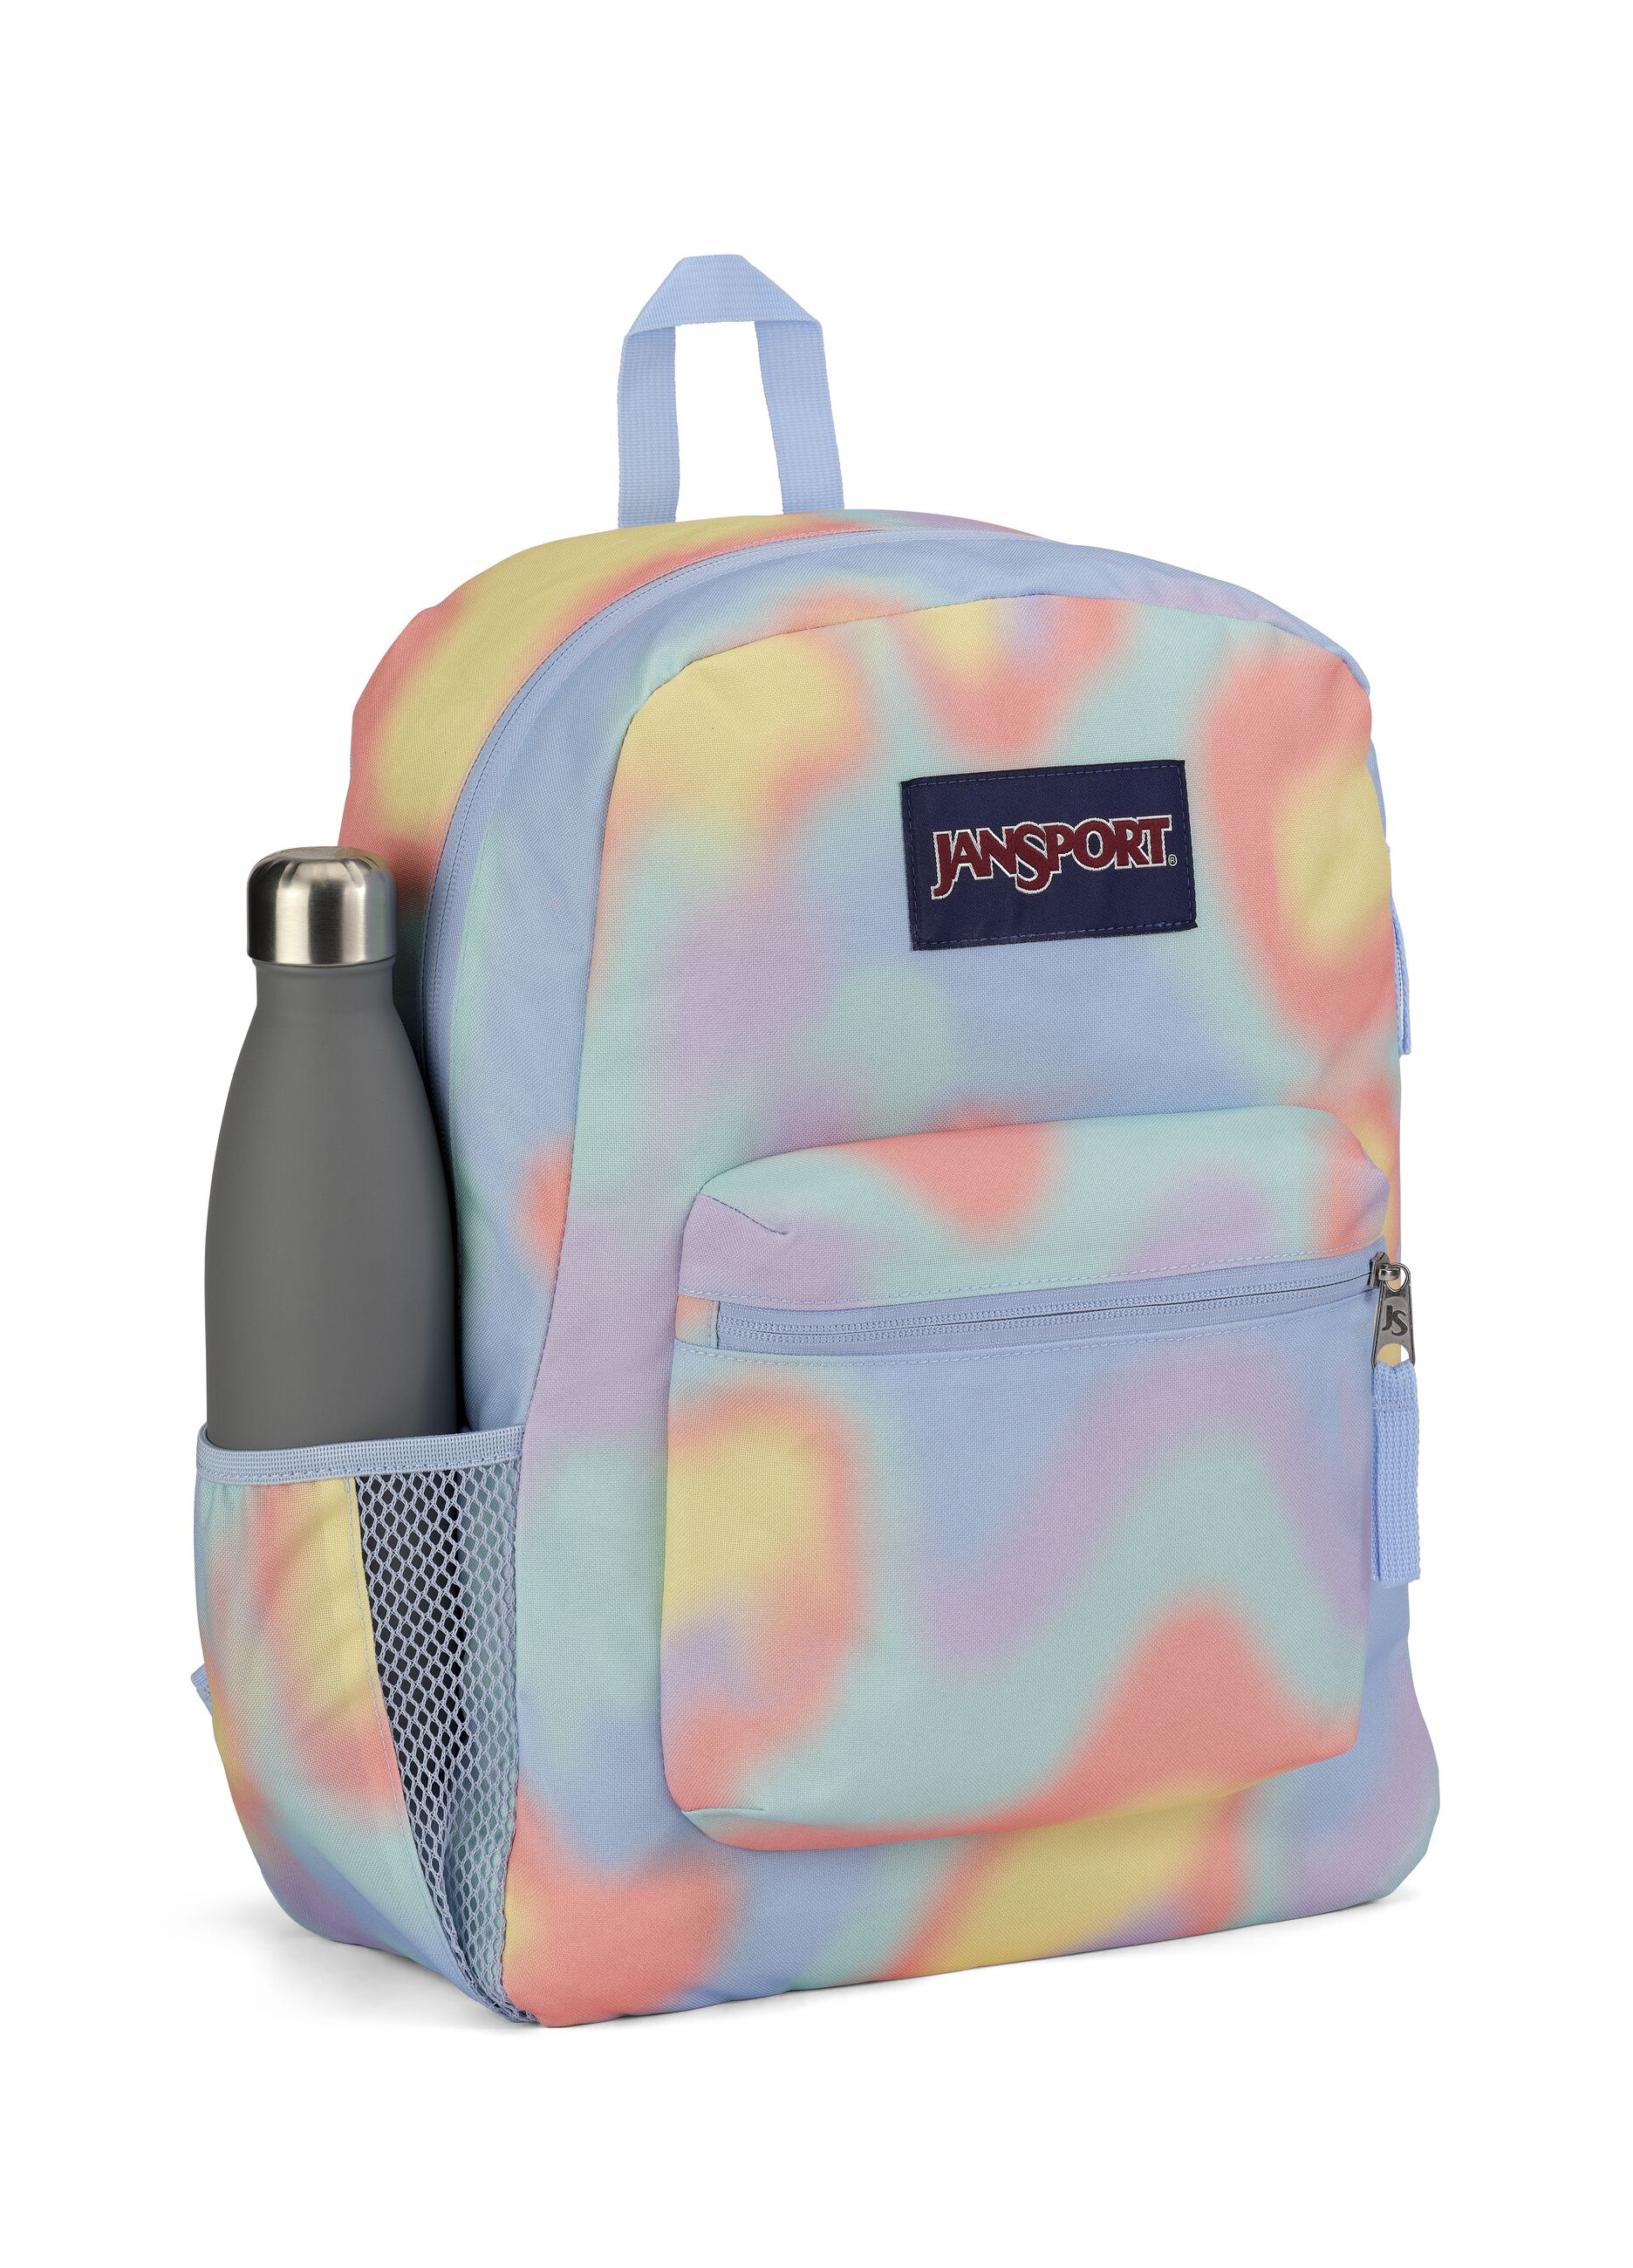 Jansport Cross Town tie-dye backpack